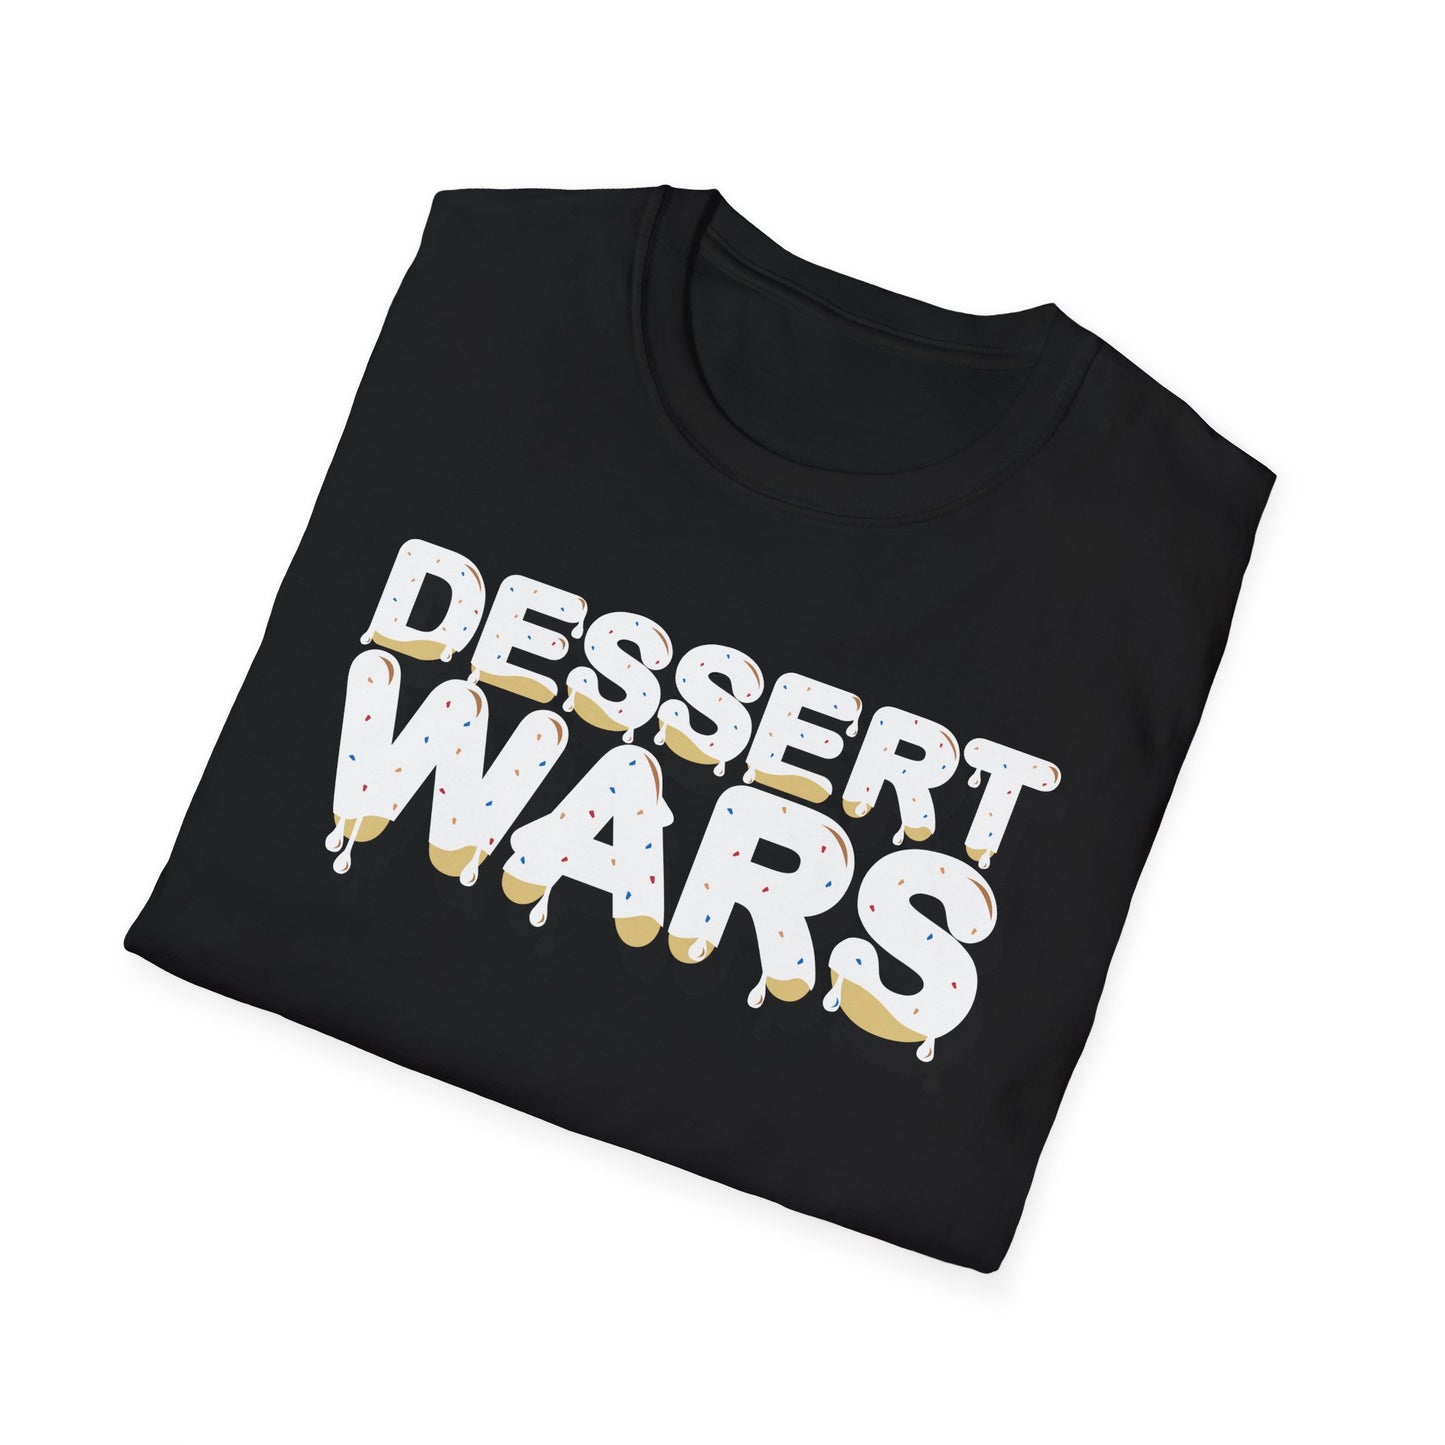 Dessert Wars - Unisex Softstyle T-Shirt